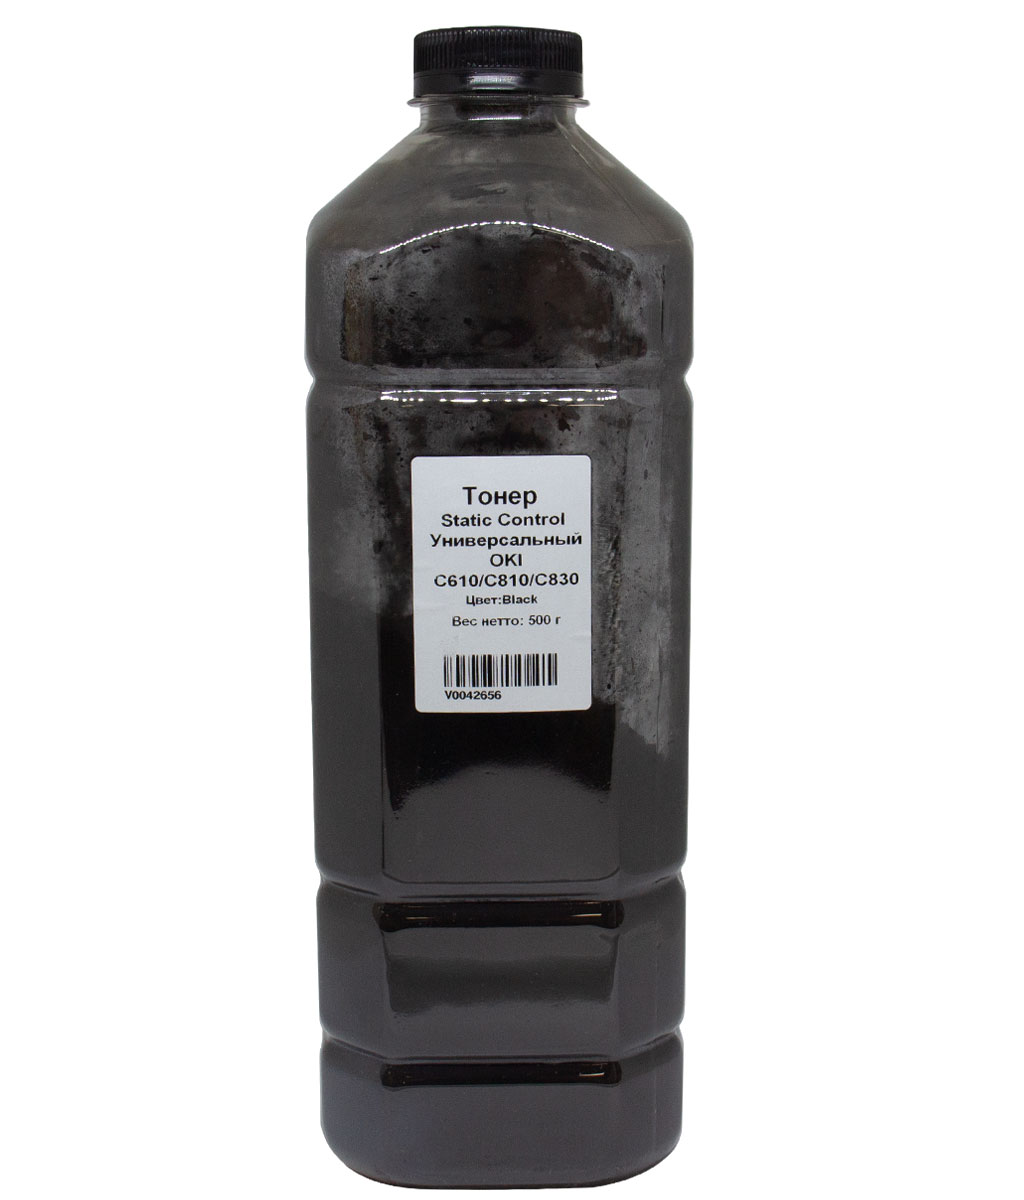 Тонер Static Control, бутыль 500г, черный, совместимый для Oki C610/810/830, универсальный (OKIUNIV2-500G-K-RUS)